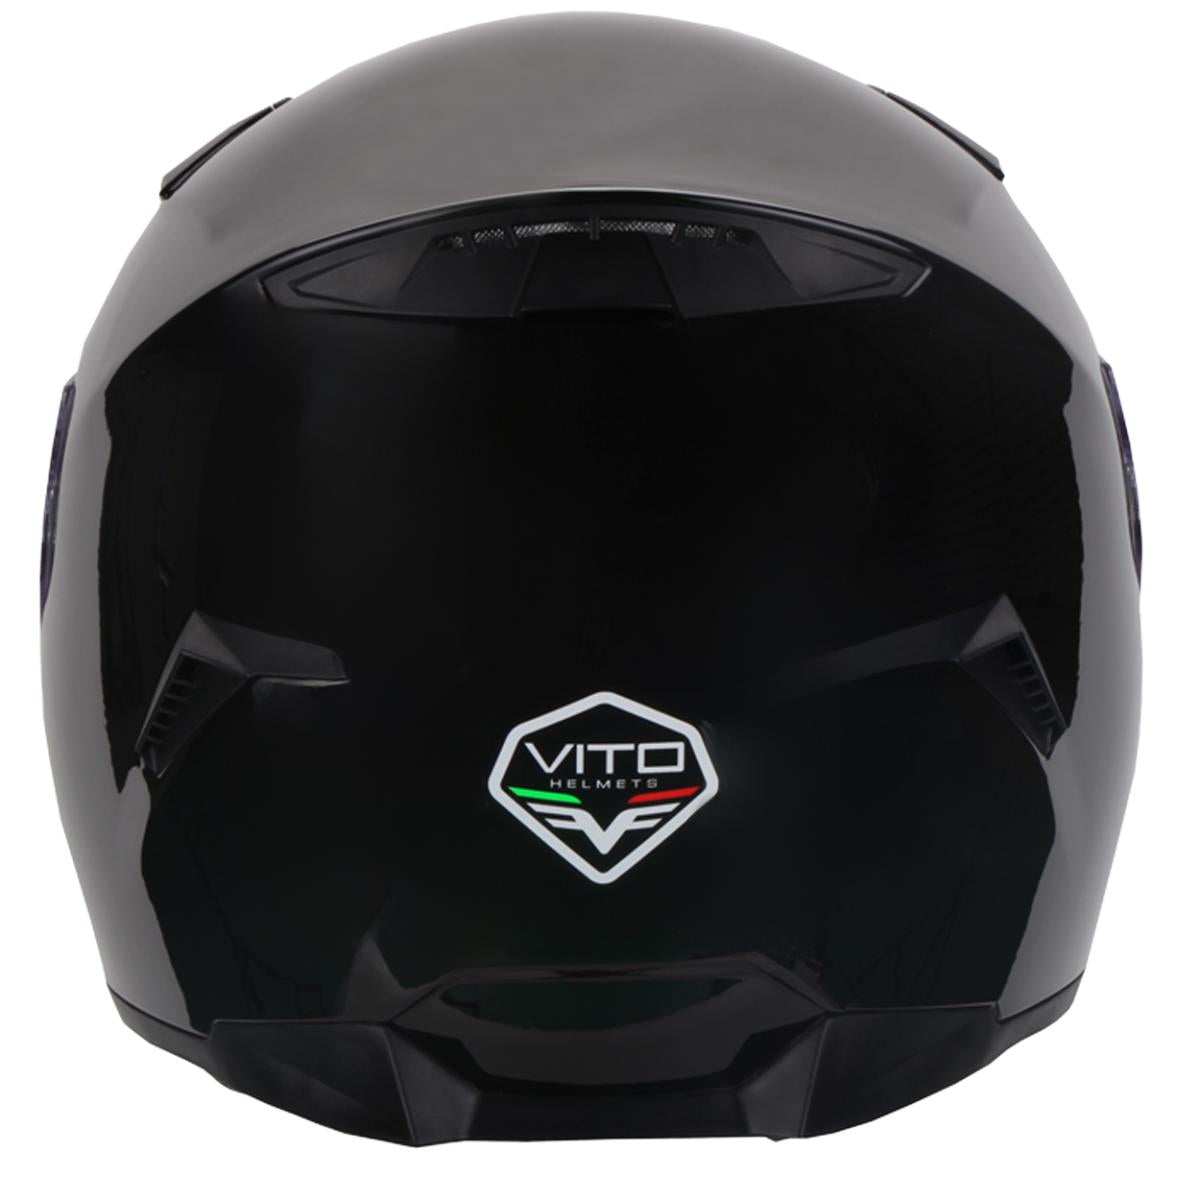 Casco Moto Integral Vito Duomo Negro Brillante - URA Moto